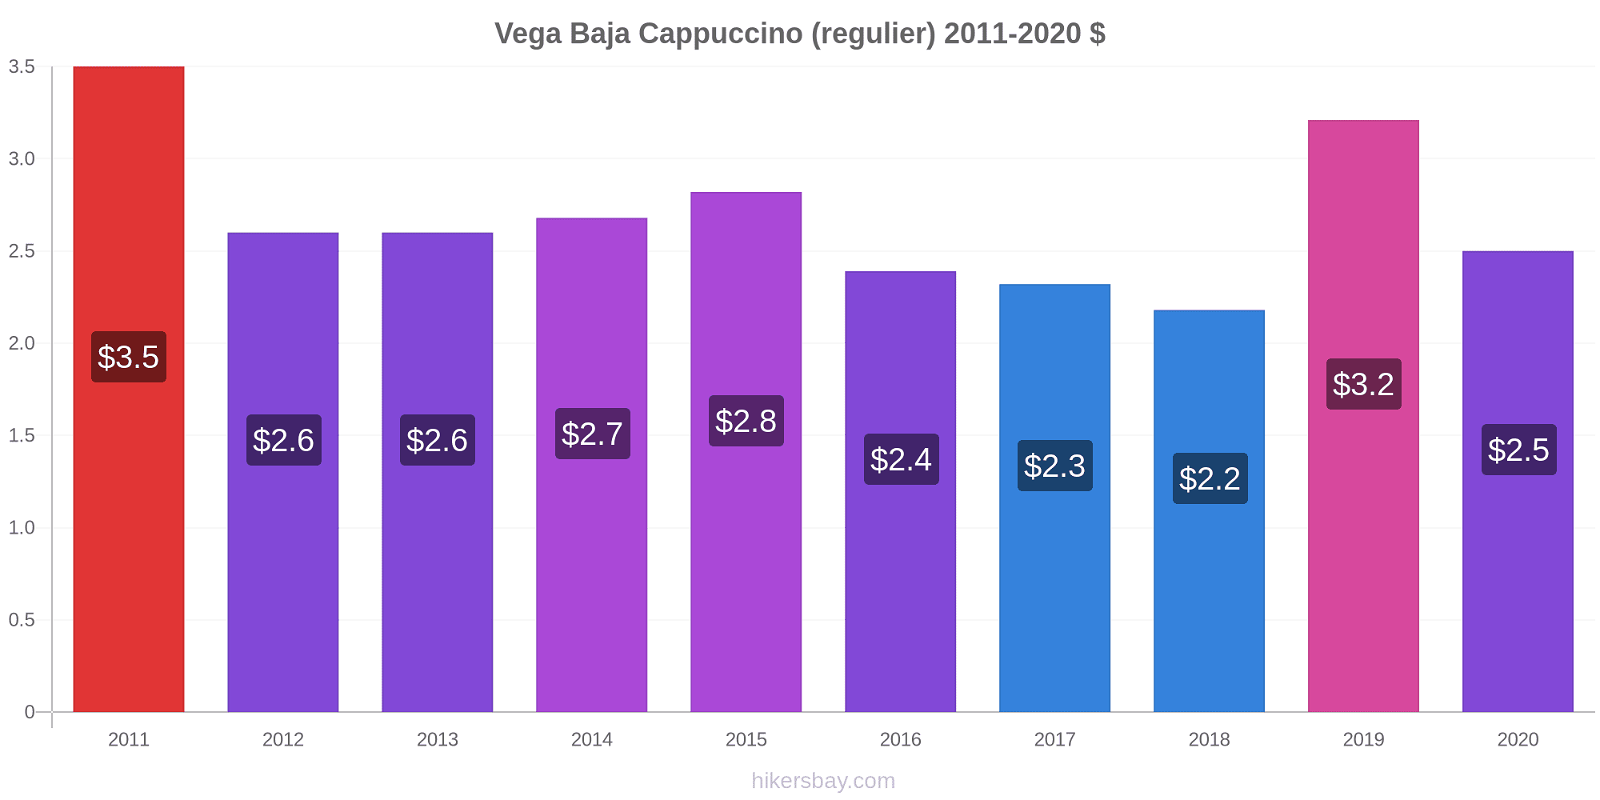 Vega Baja prijswijzigingen Cappuccino (regelmatige) hikersbay.com